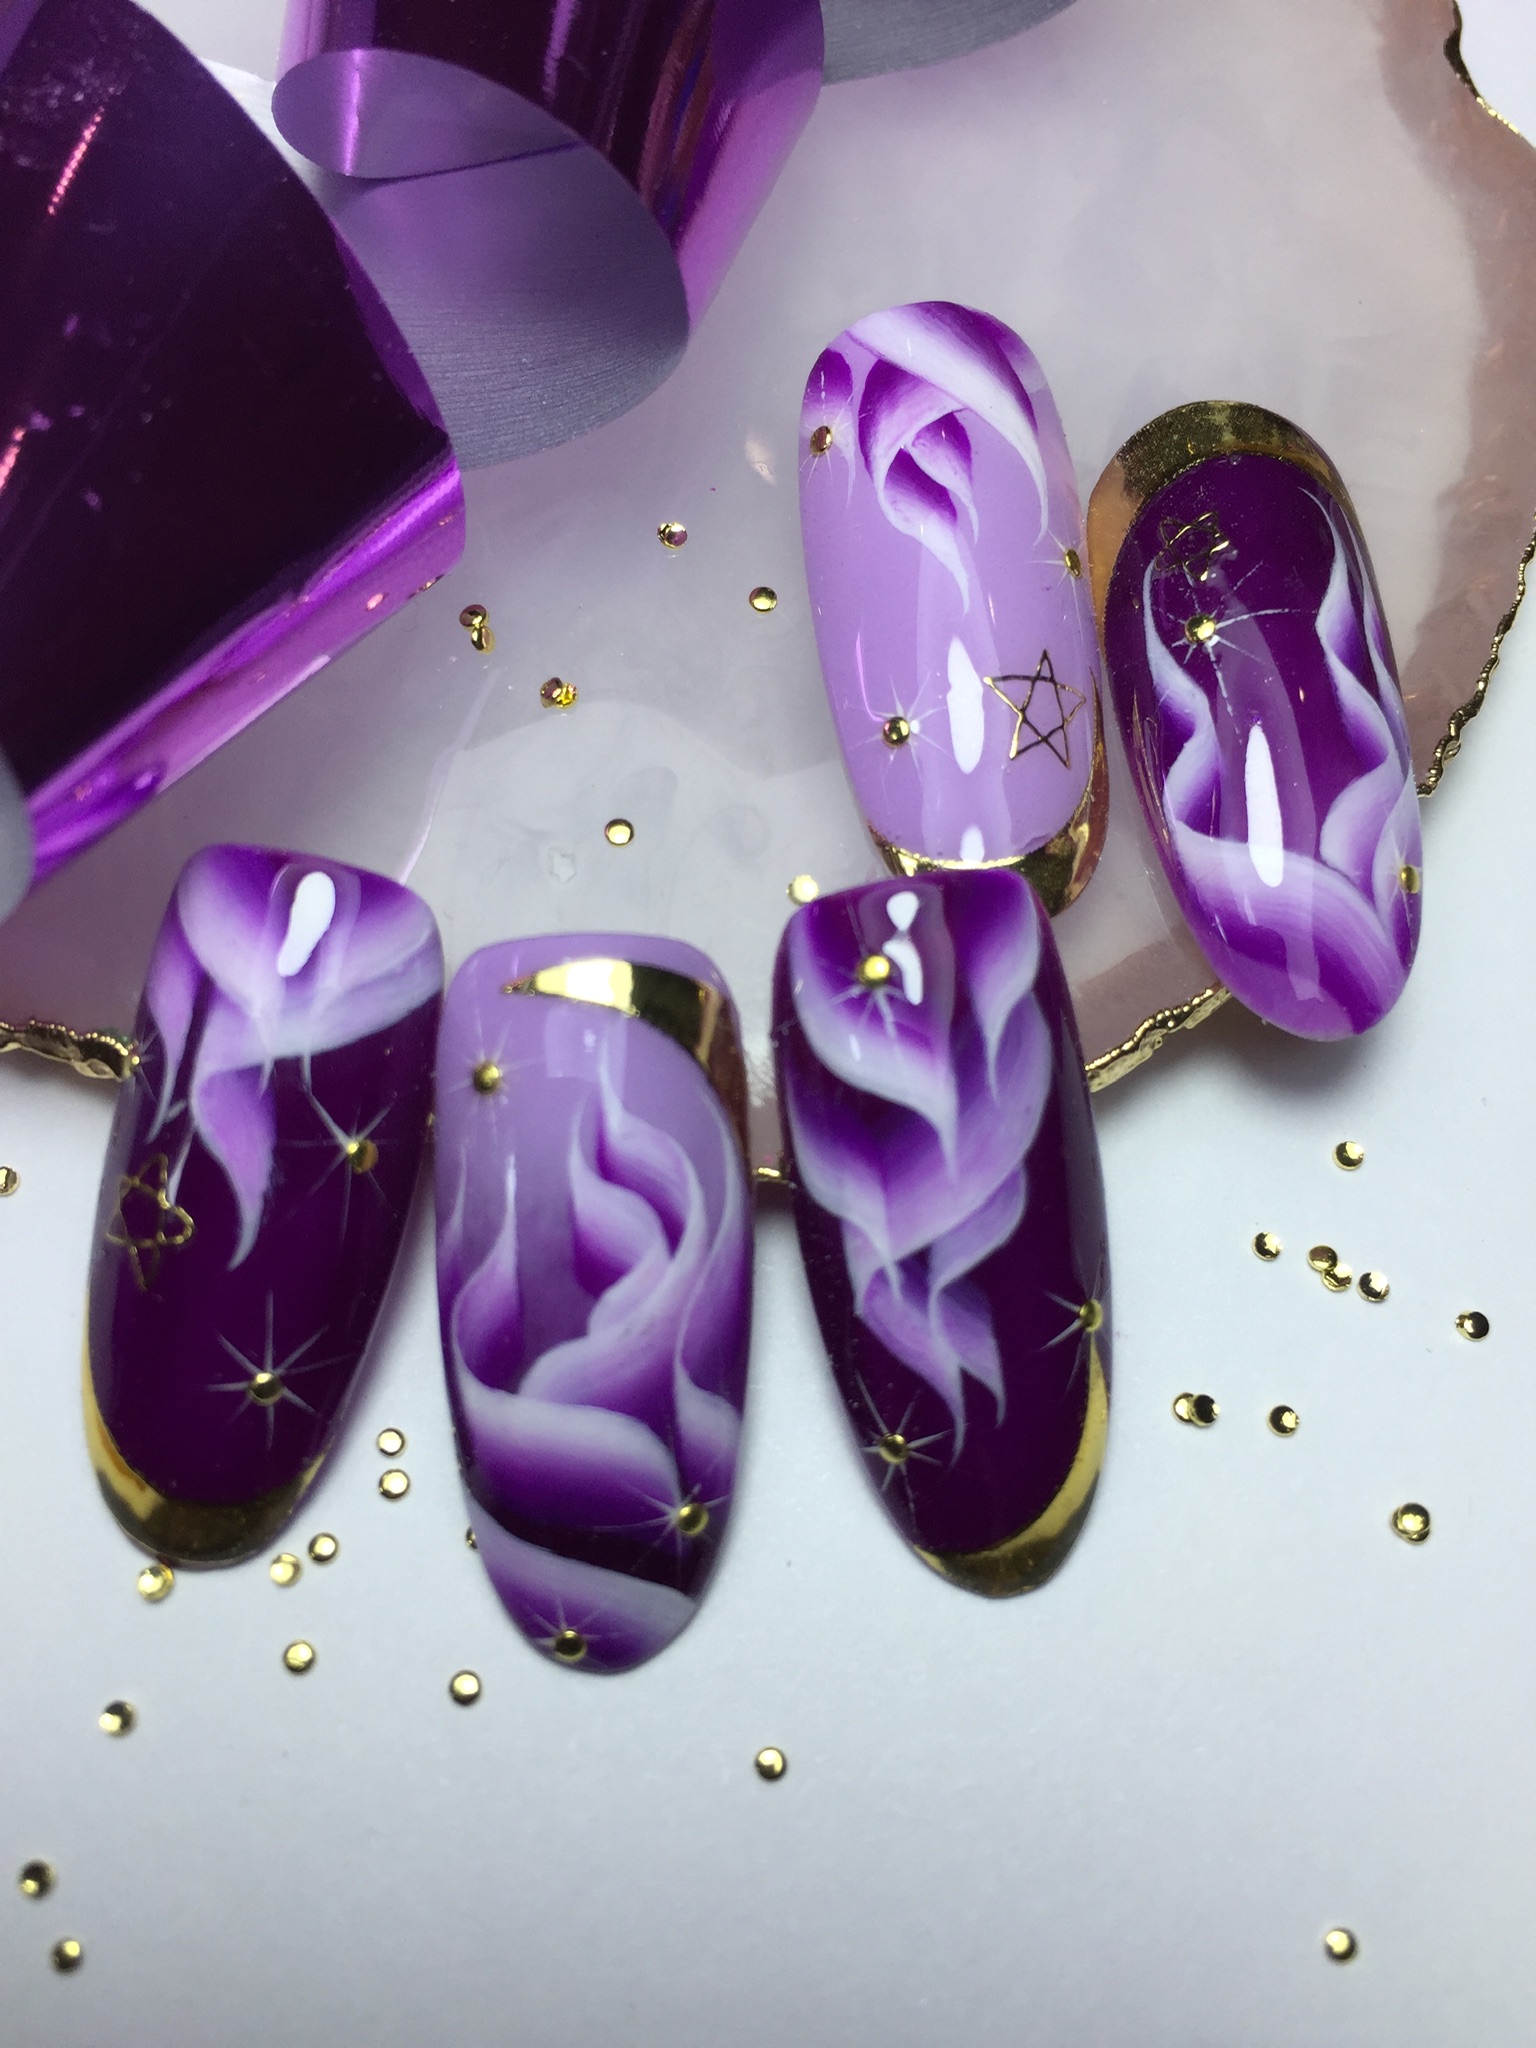 Маникюр в фиолетовом цвете с сиреневым абстрактным рисунком и золотыми полосками.